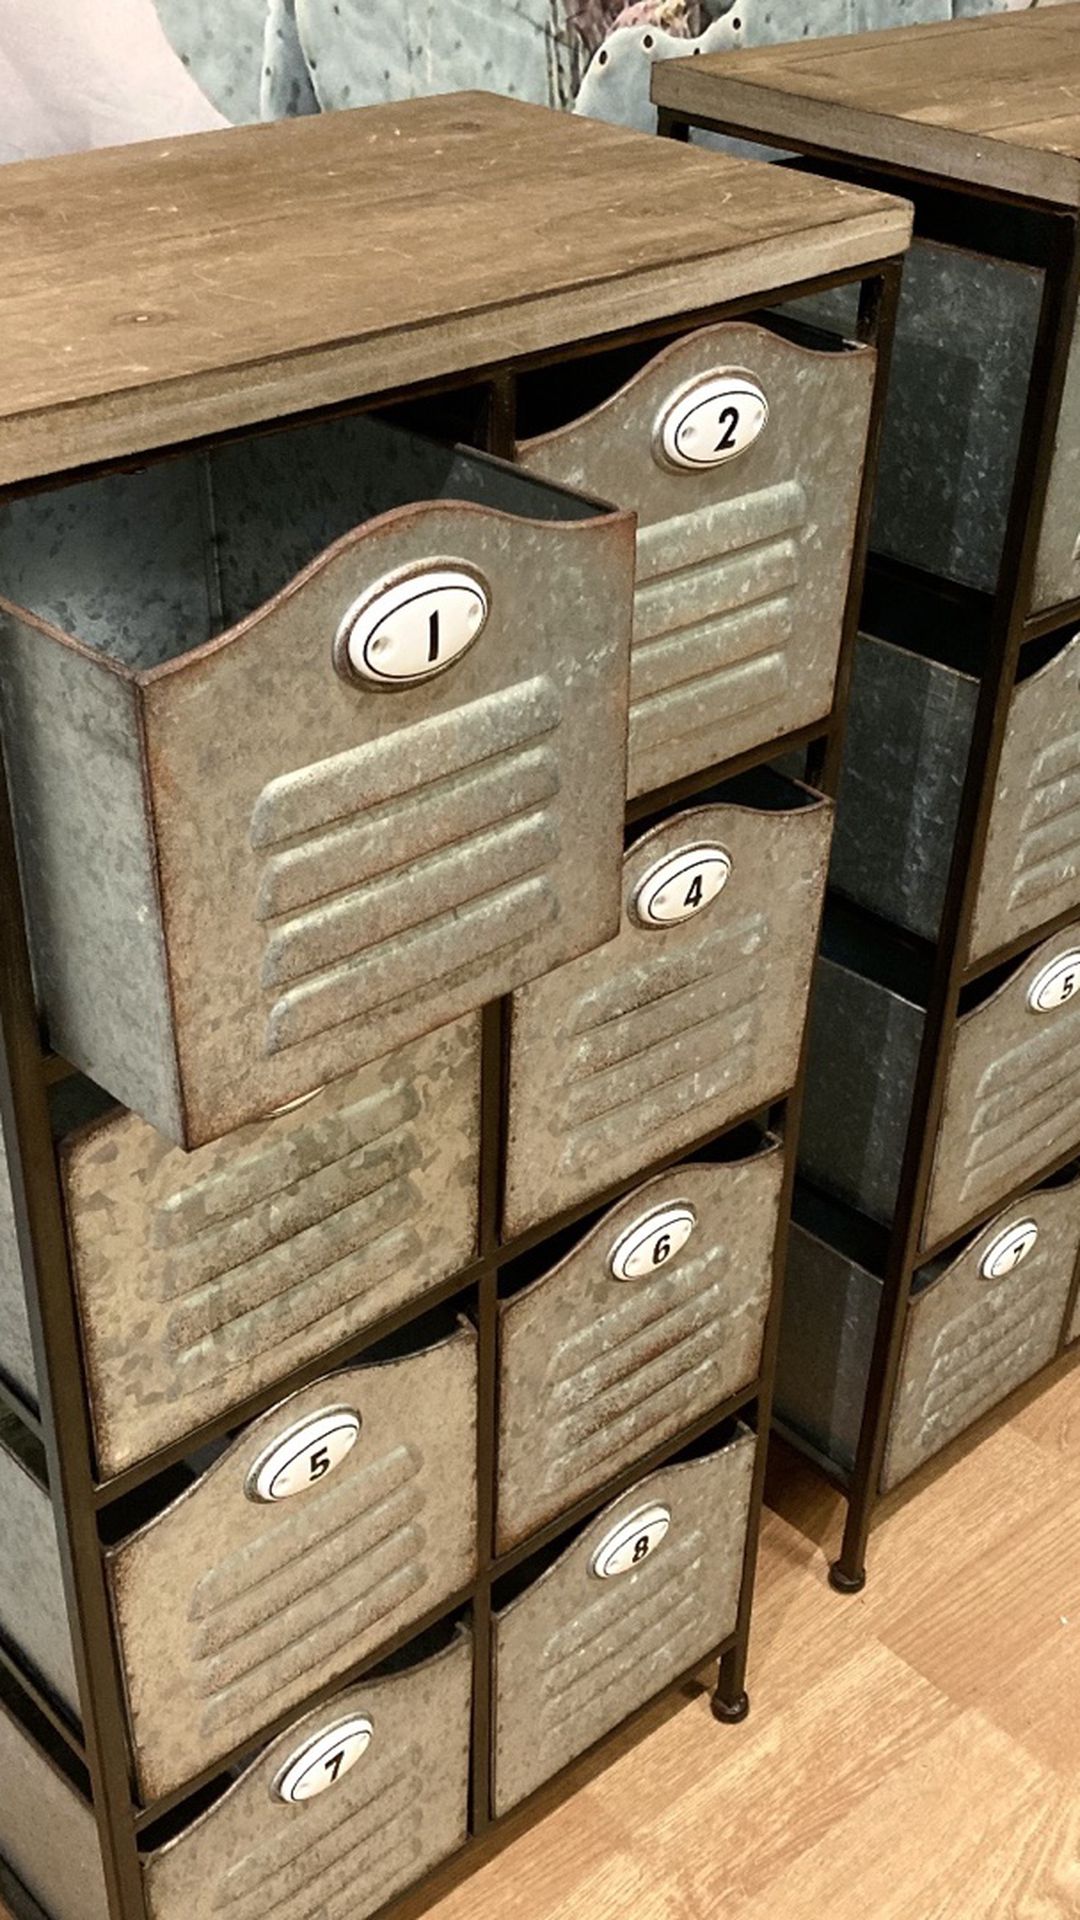 Numbered Storage Bins In Storage Cabinet